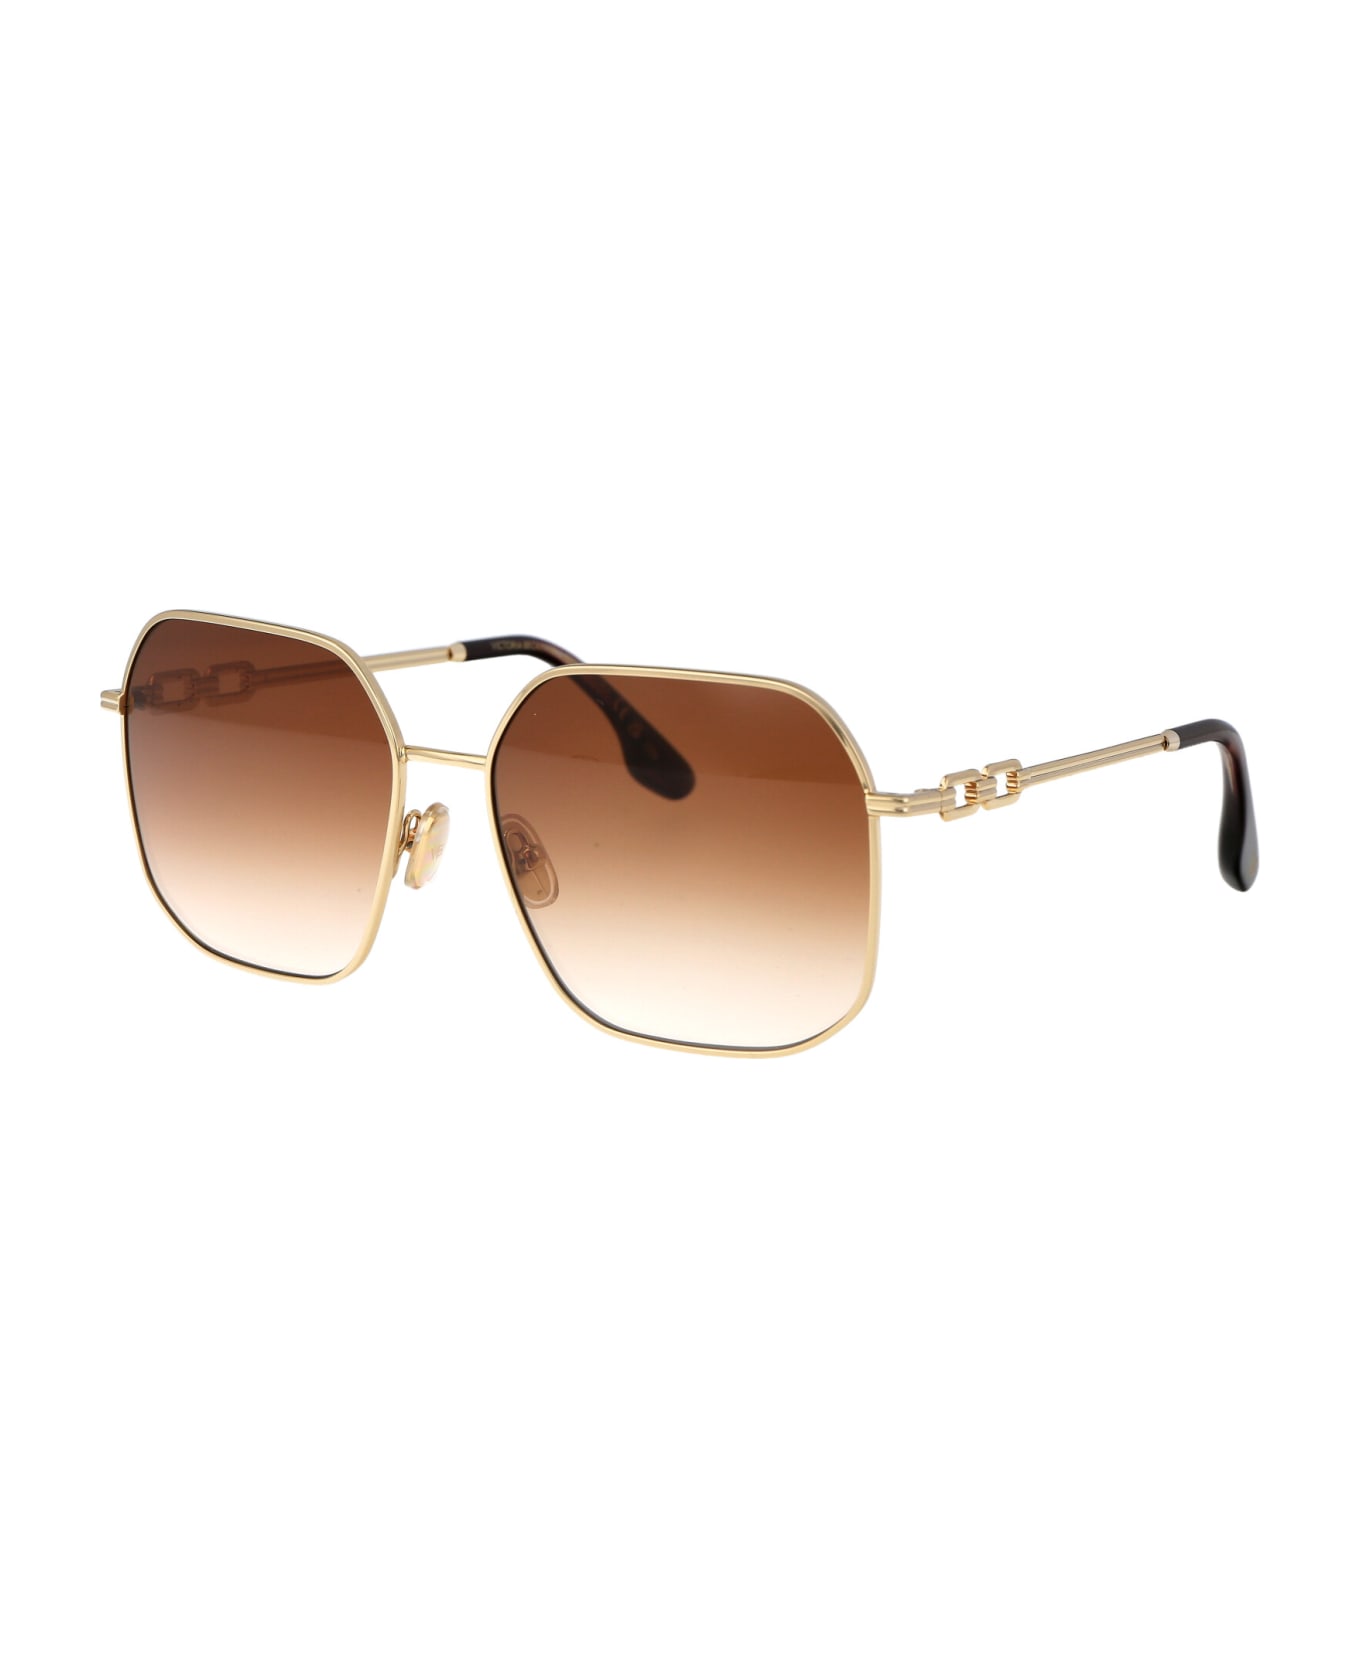 Victoria Beckham Vb232s Sunglasses - 723 GOLD/HONEY